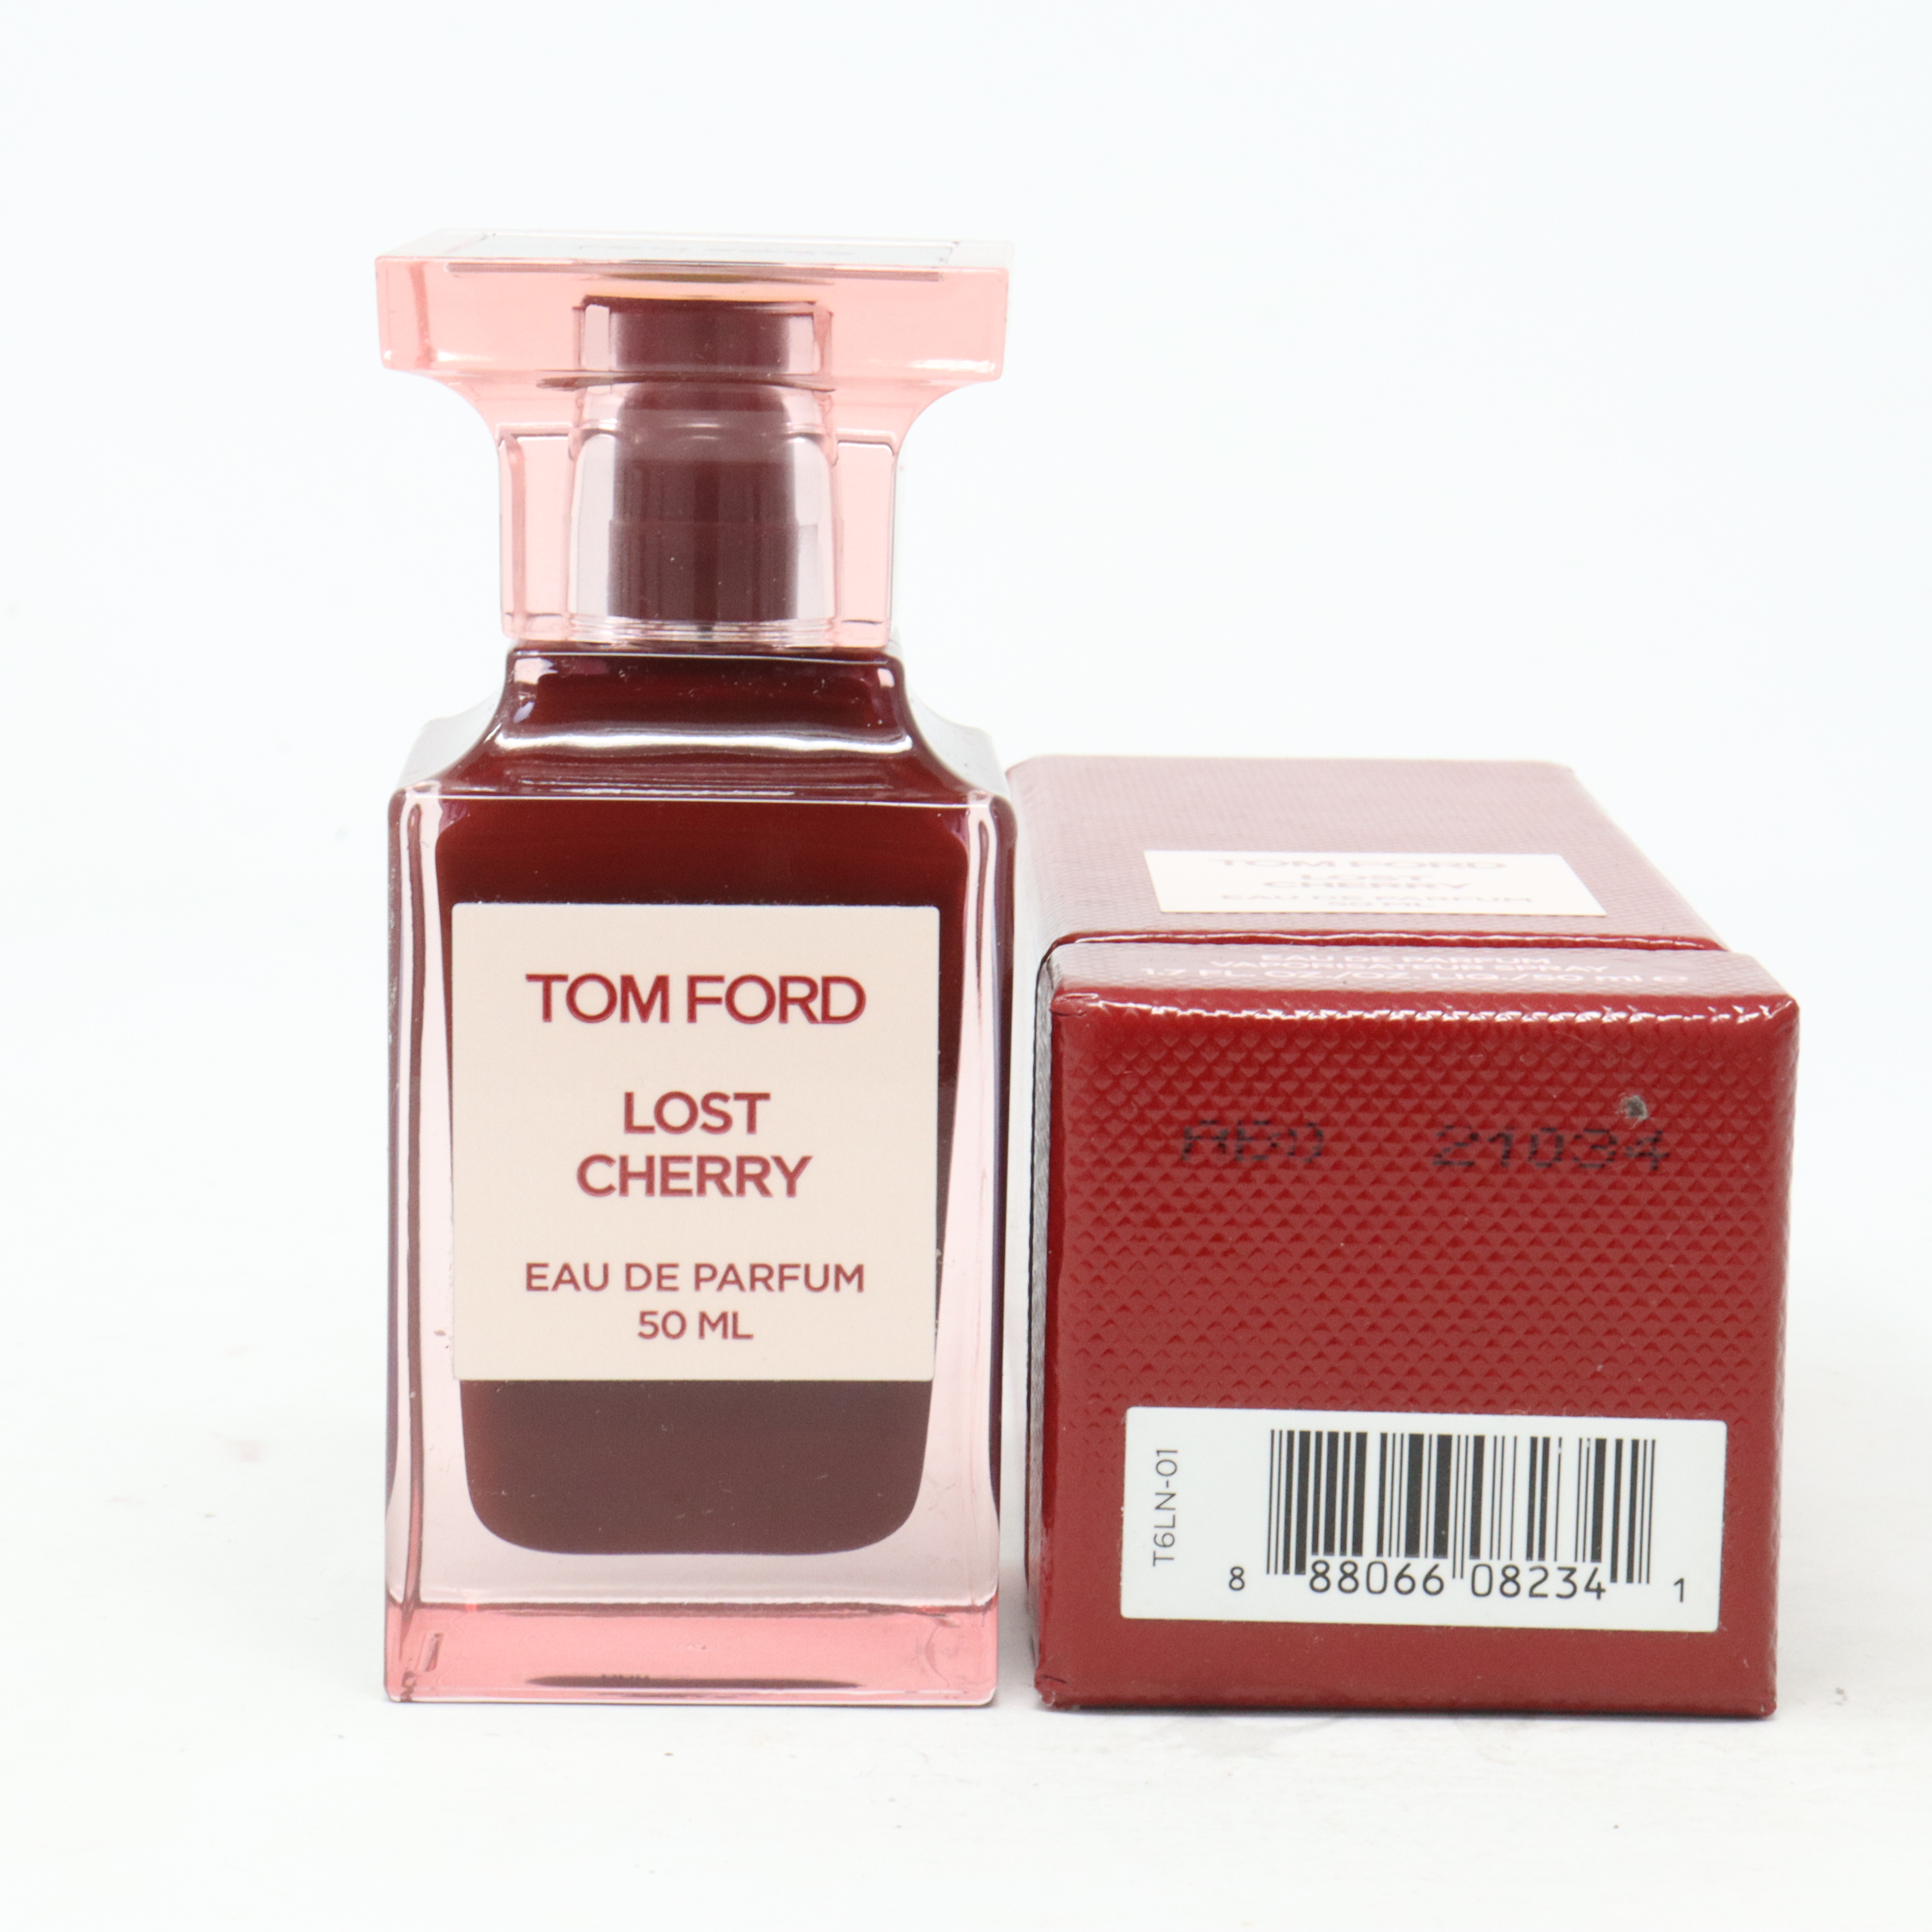 Lost Cherry by Tom Ford Eau De Parfum 1.7oz/50ml Spray New